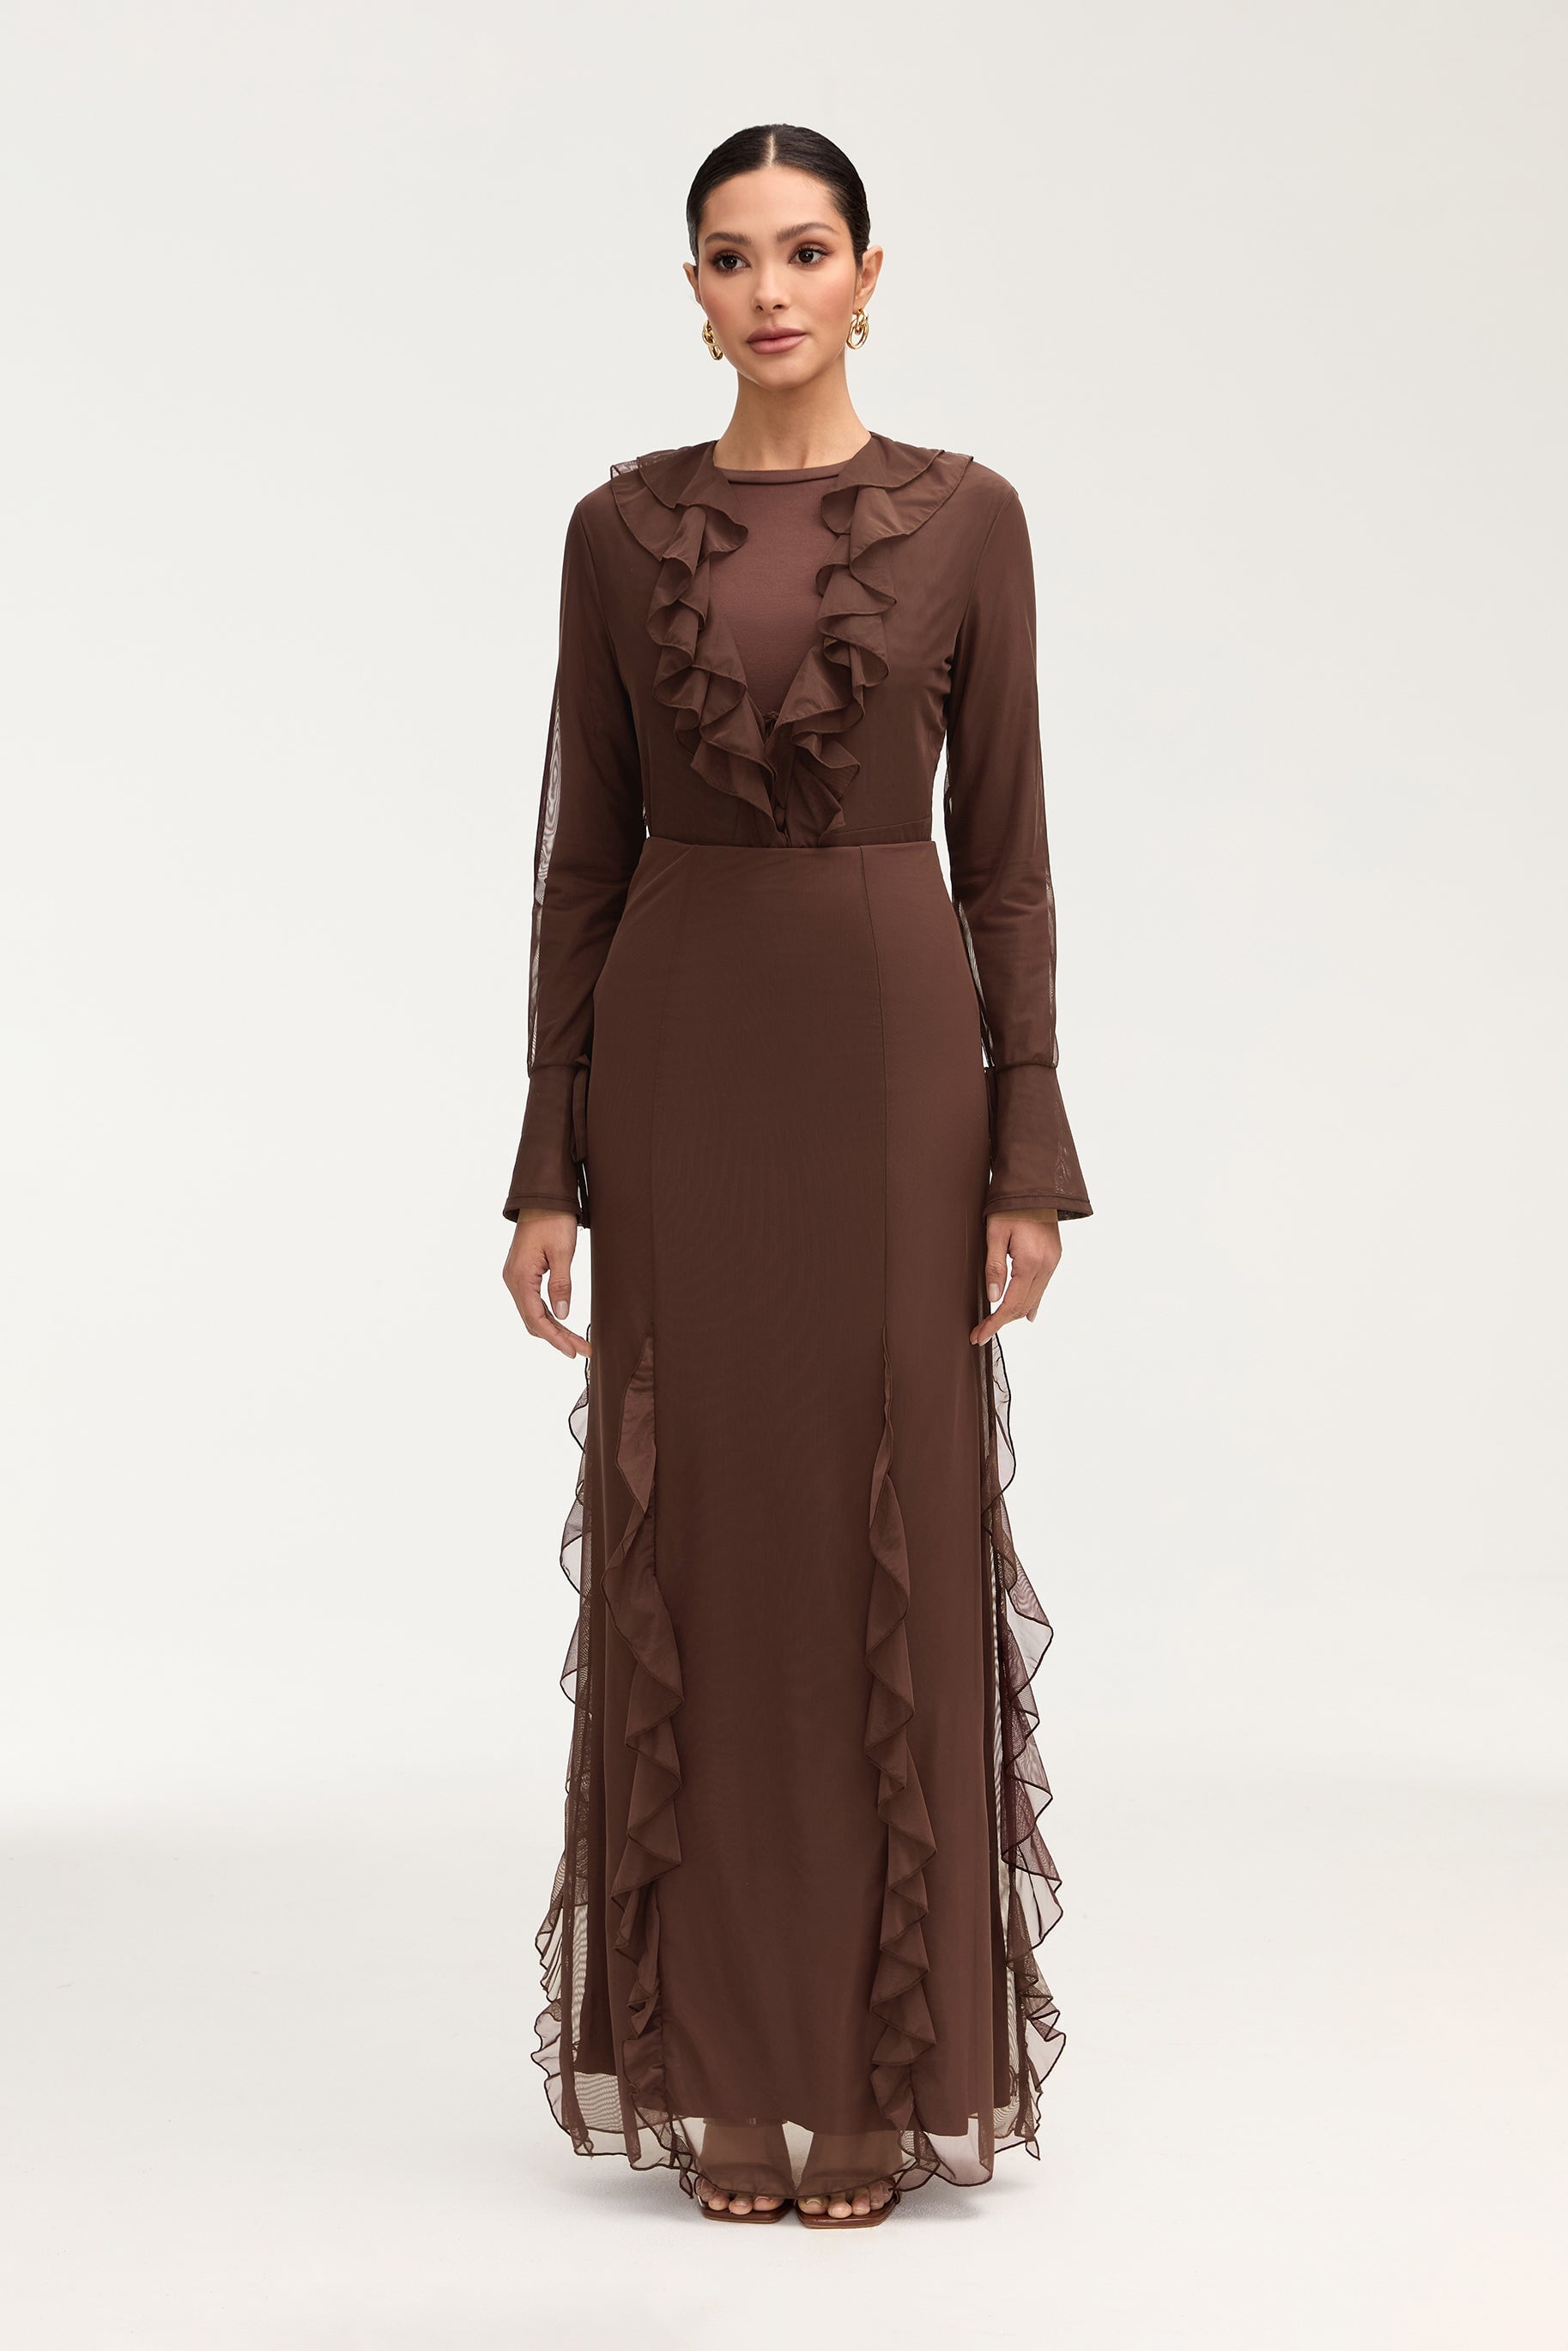 Adriana Waterfall Mesh Maxi Skirt - Brown Clothing Veiled 